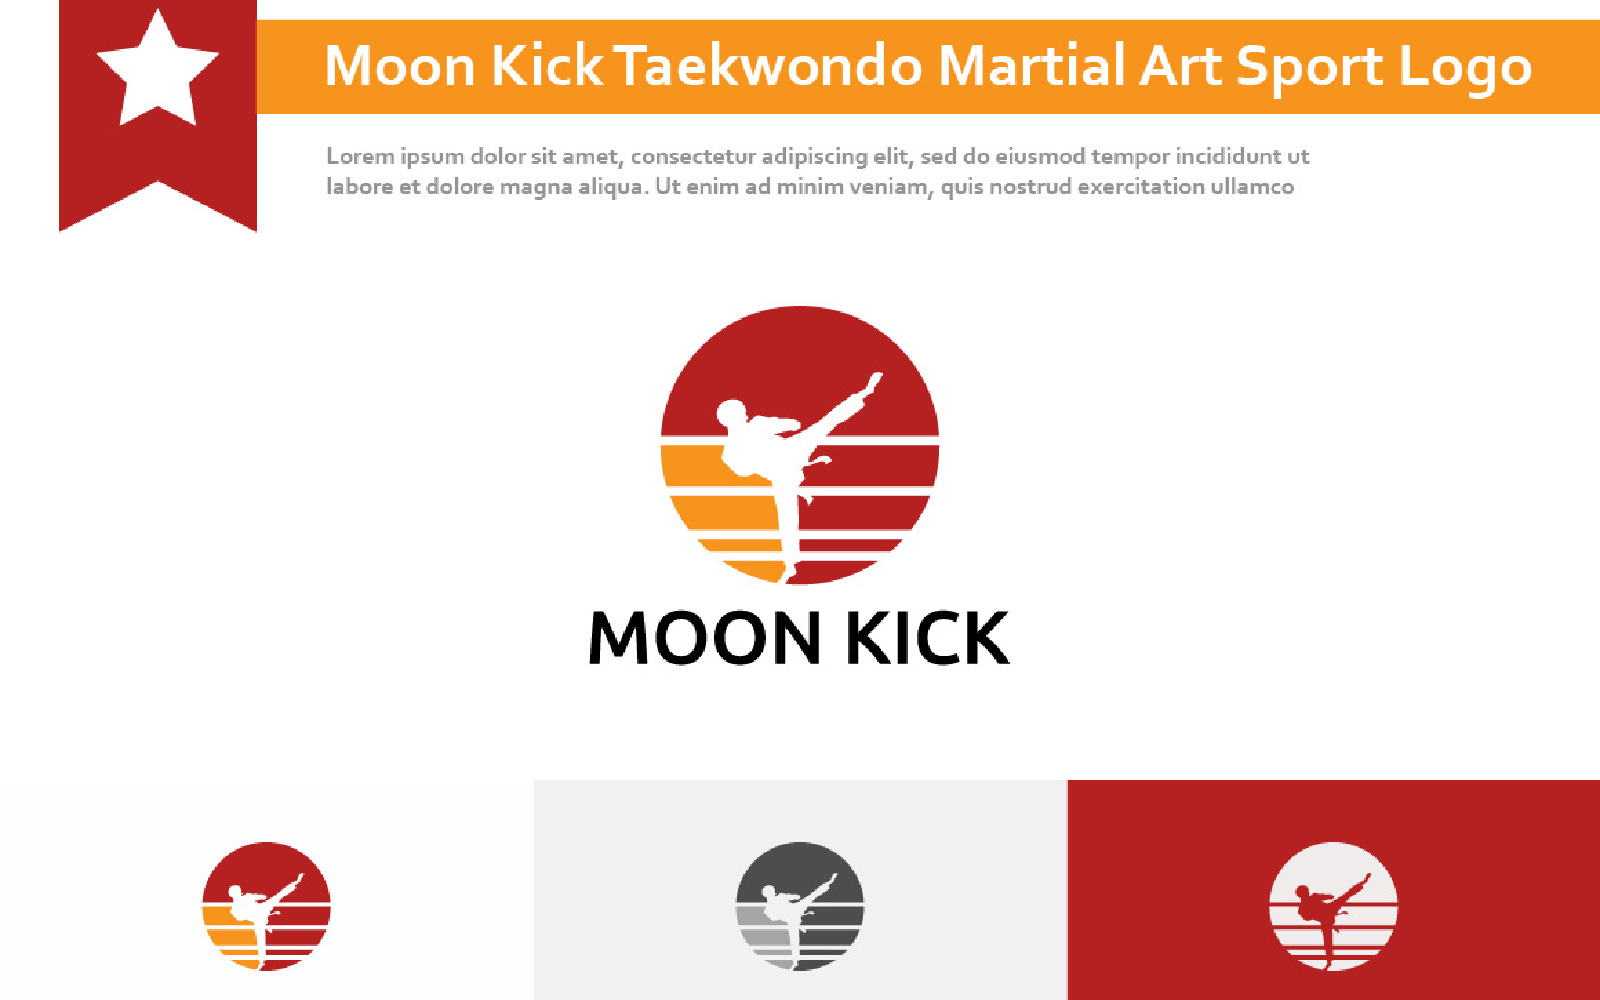 Moon Kick Taekwondo Martial Art Sport Logo